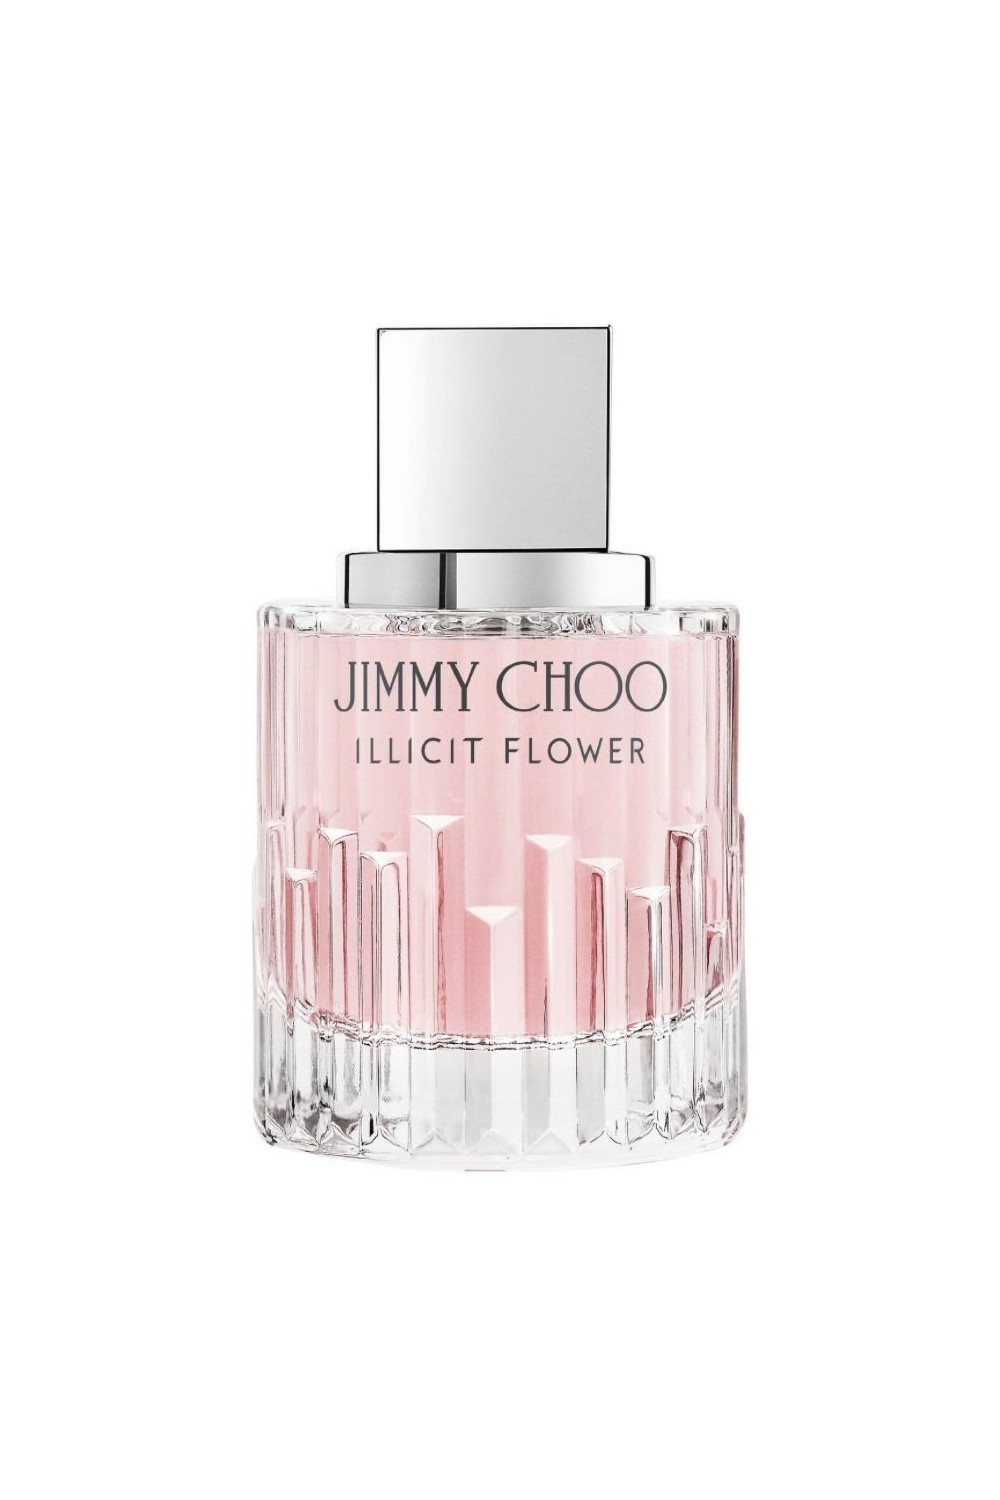 Jimmy Choo Illicit Flower Eau De Toilette Spray 40ml